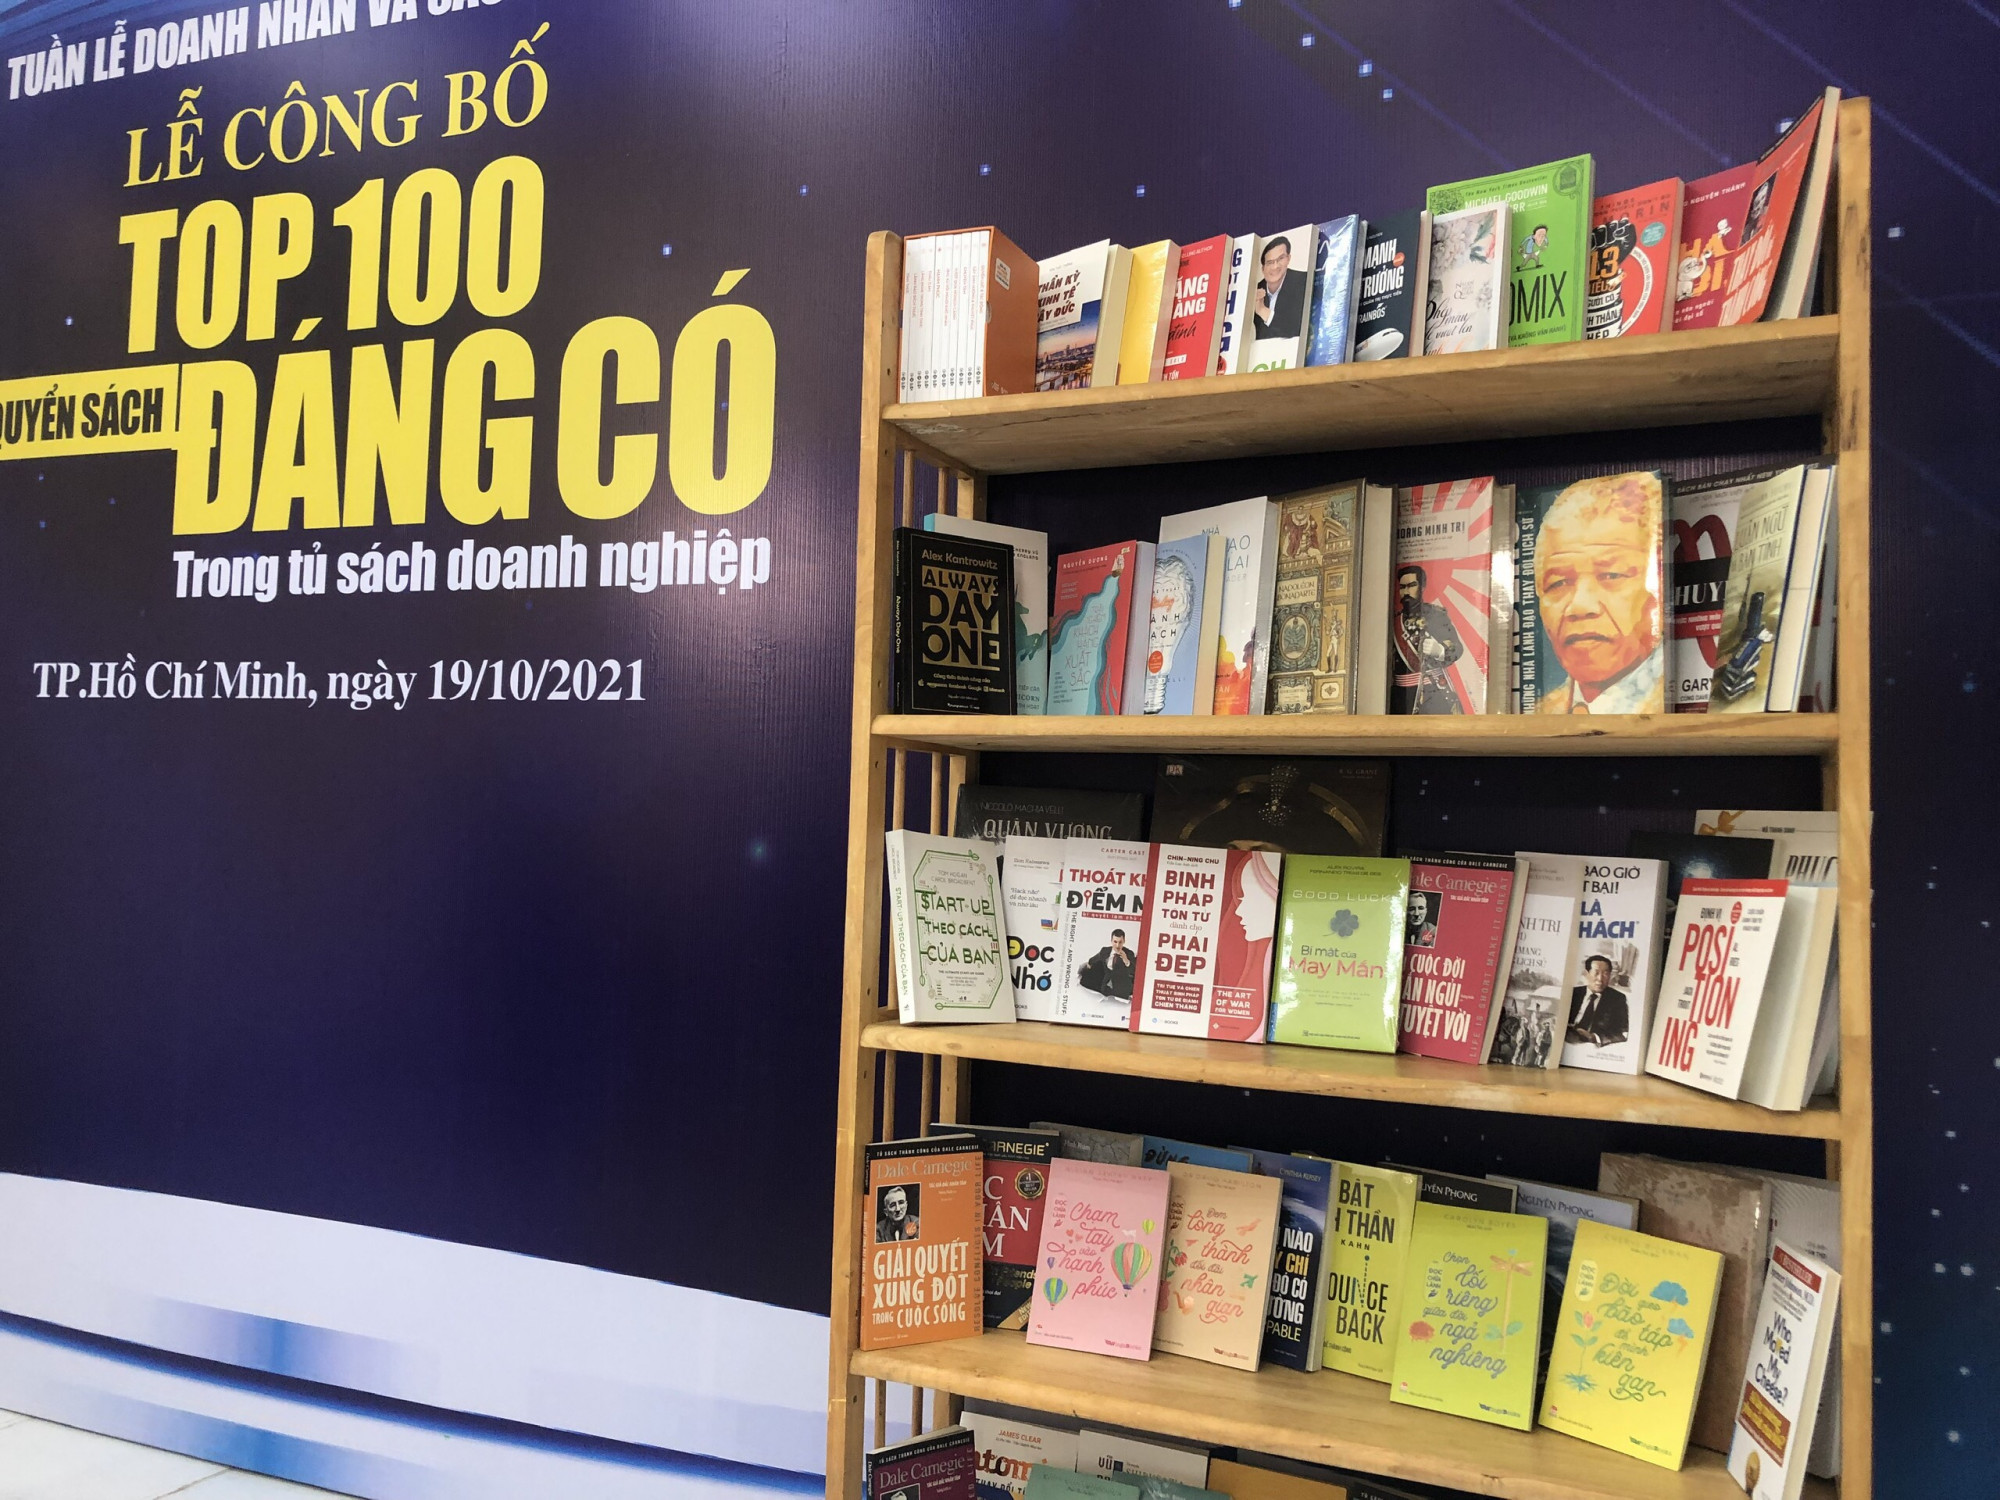 Trong số 100 cuốn sách được bình chọn, có 12 tựa sách là của doanh nhân Việt viết.